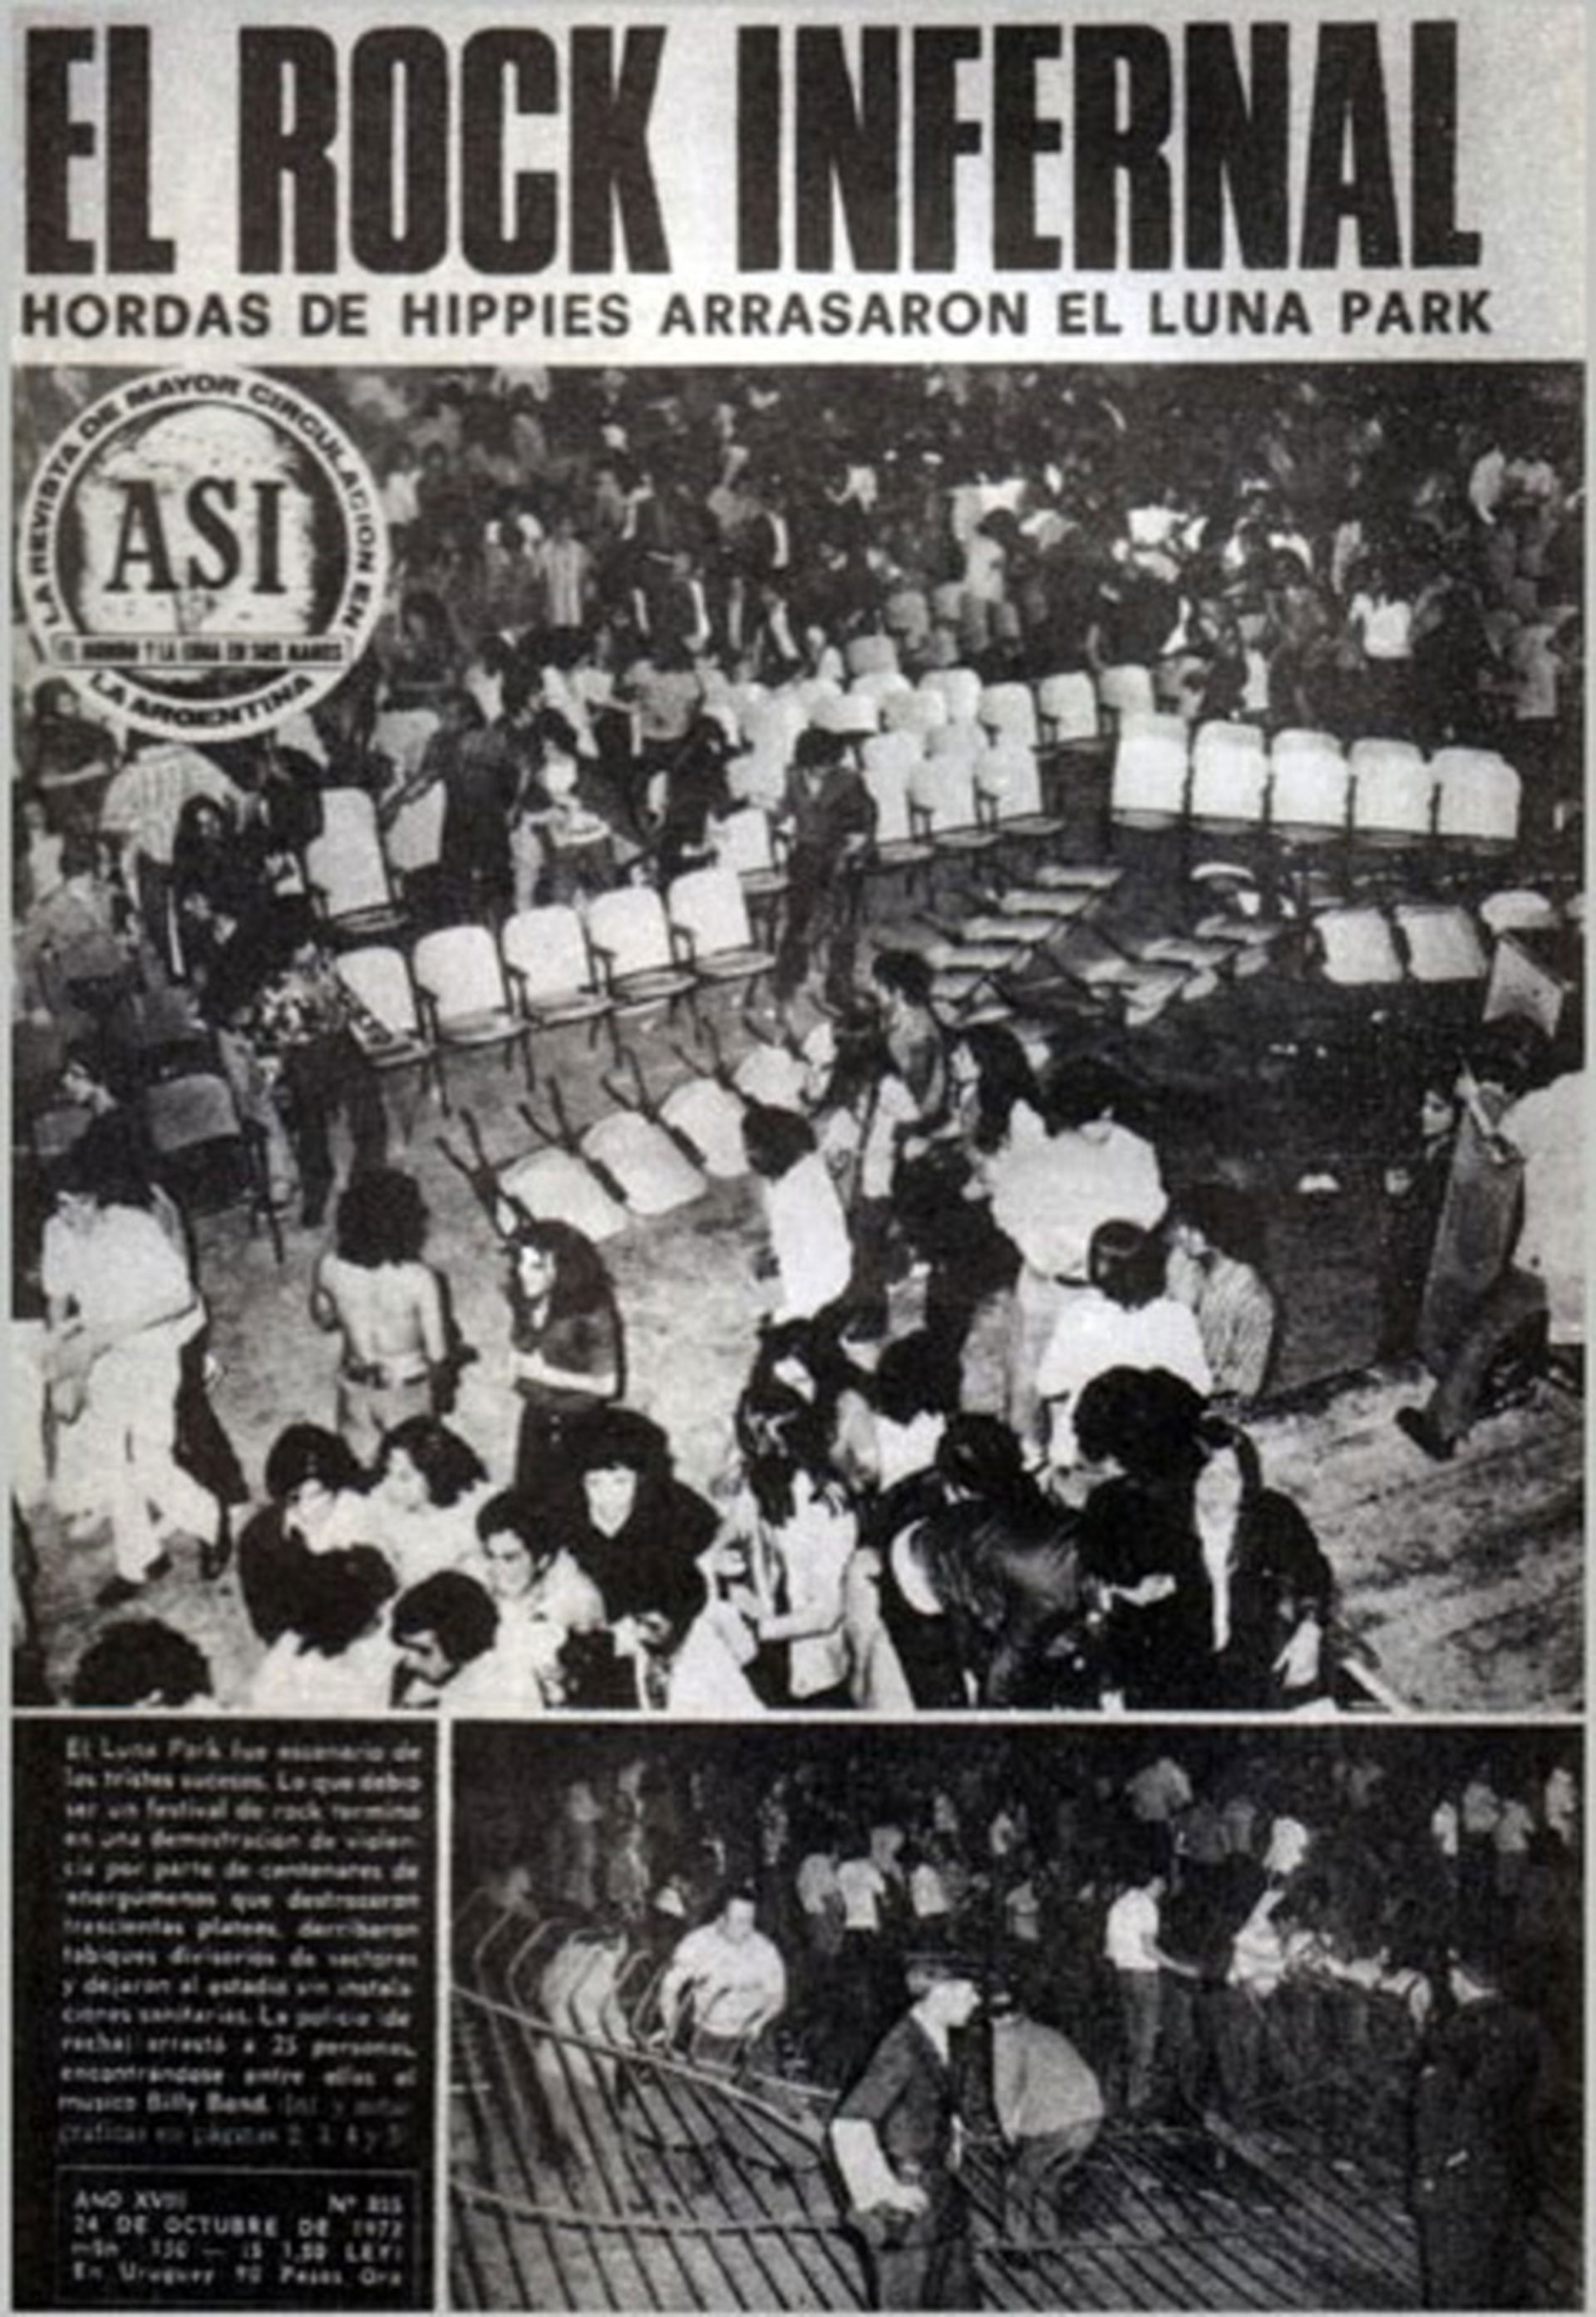 Tapa de la revista Así (del 24 de octubre de 1972). El popular medio gráfico de la época, creado por Héctor Ricardo García, reflejó el episodio con elocuencia